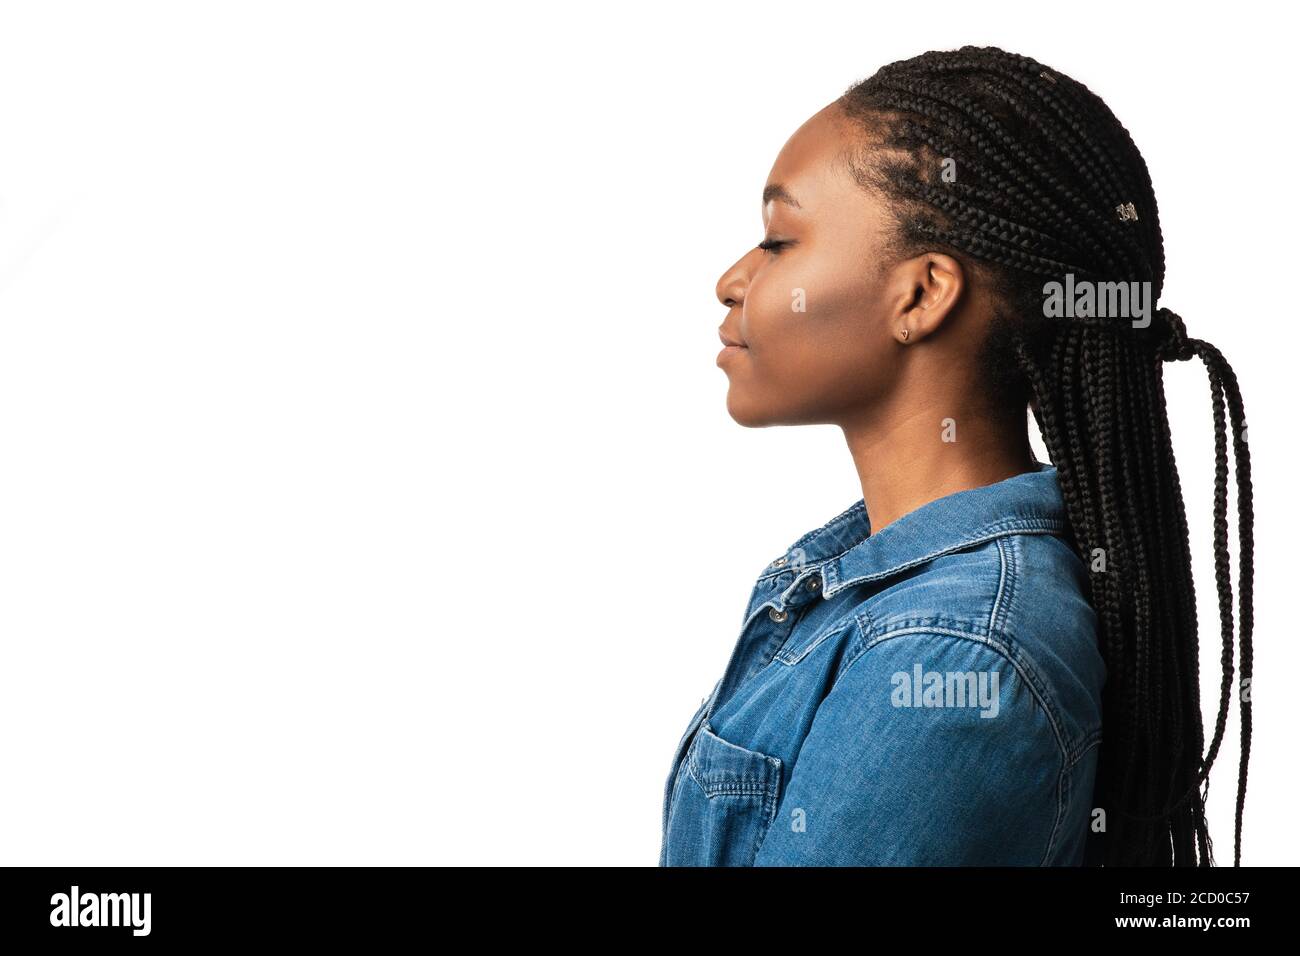 Profil Portrait de la fille noire avec coiffure tressée, fond blanc Banque D'Images